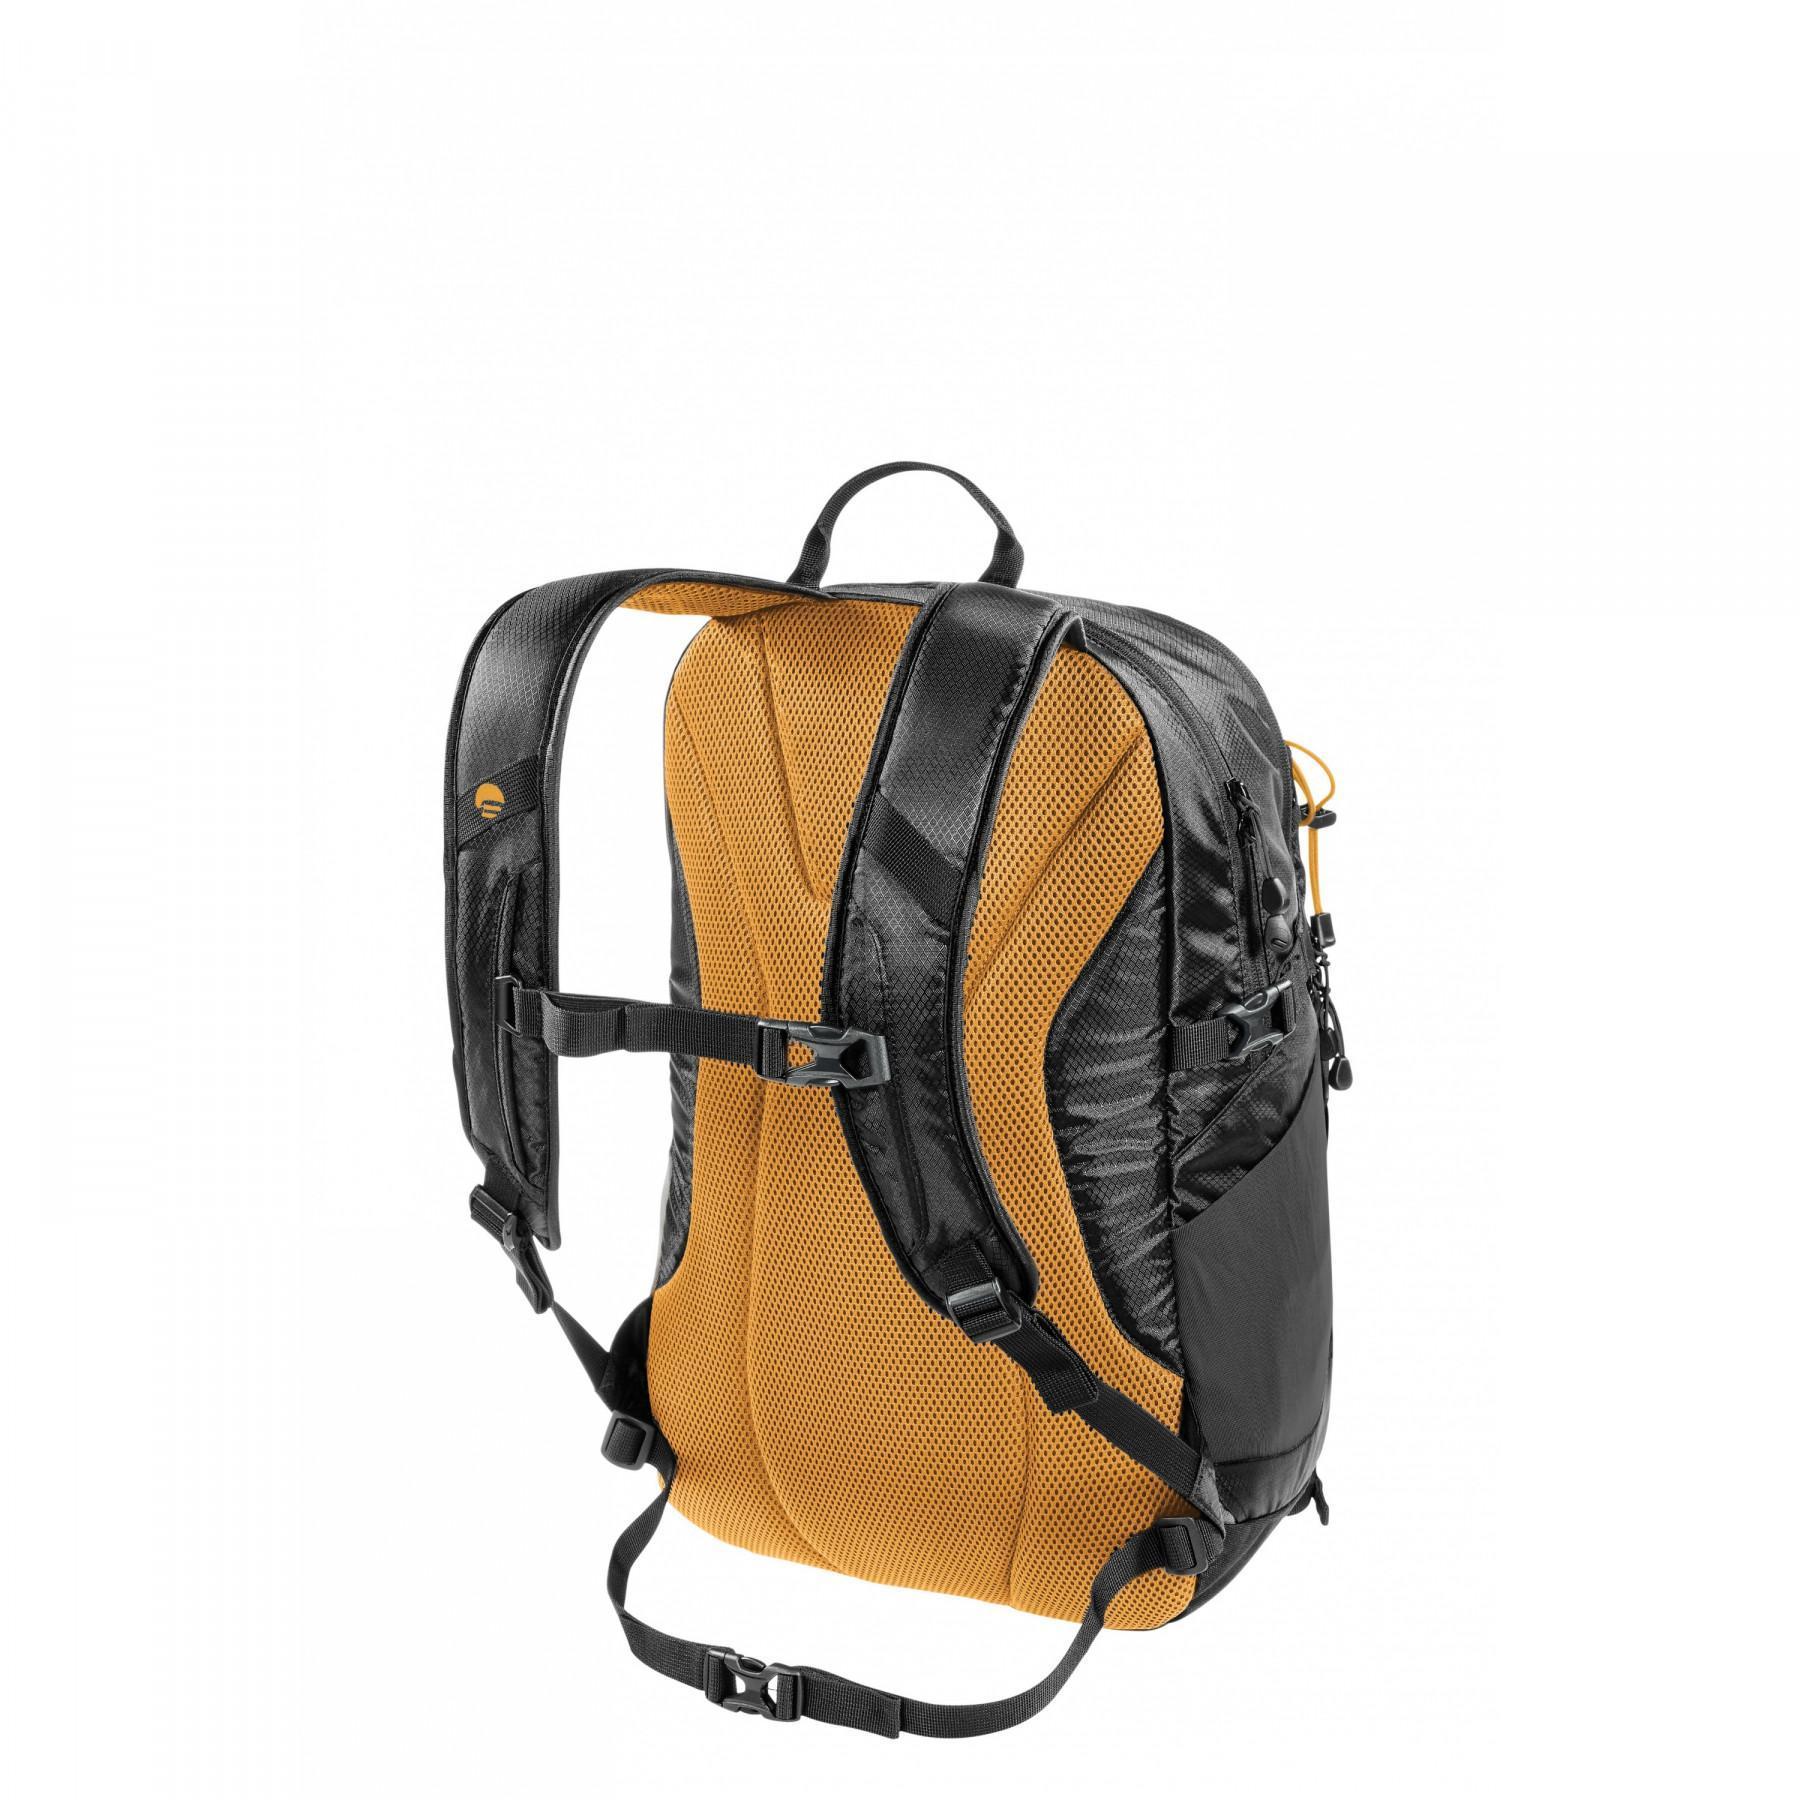 Backpack Ferrino core 30L